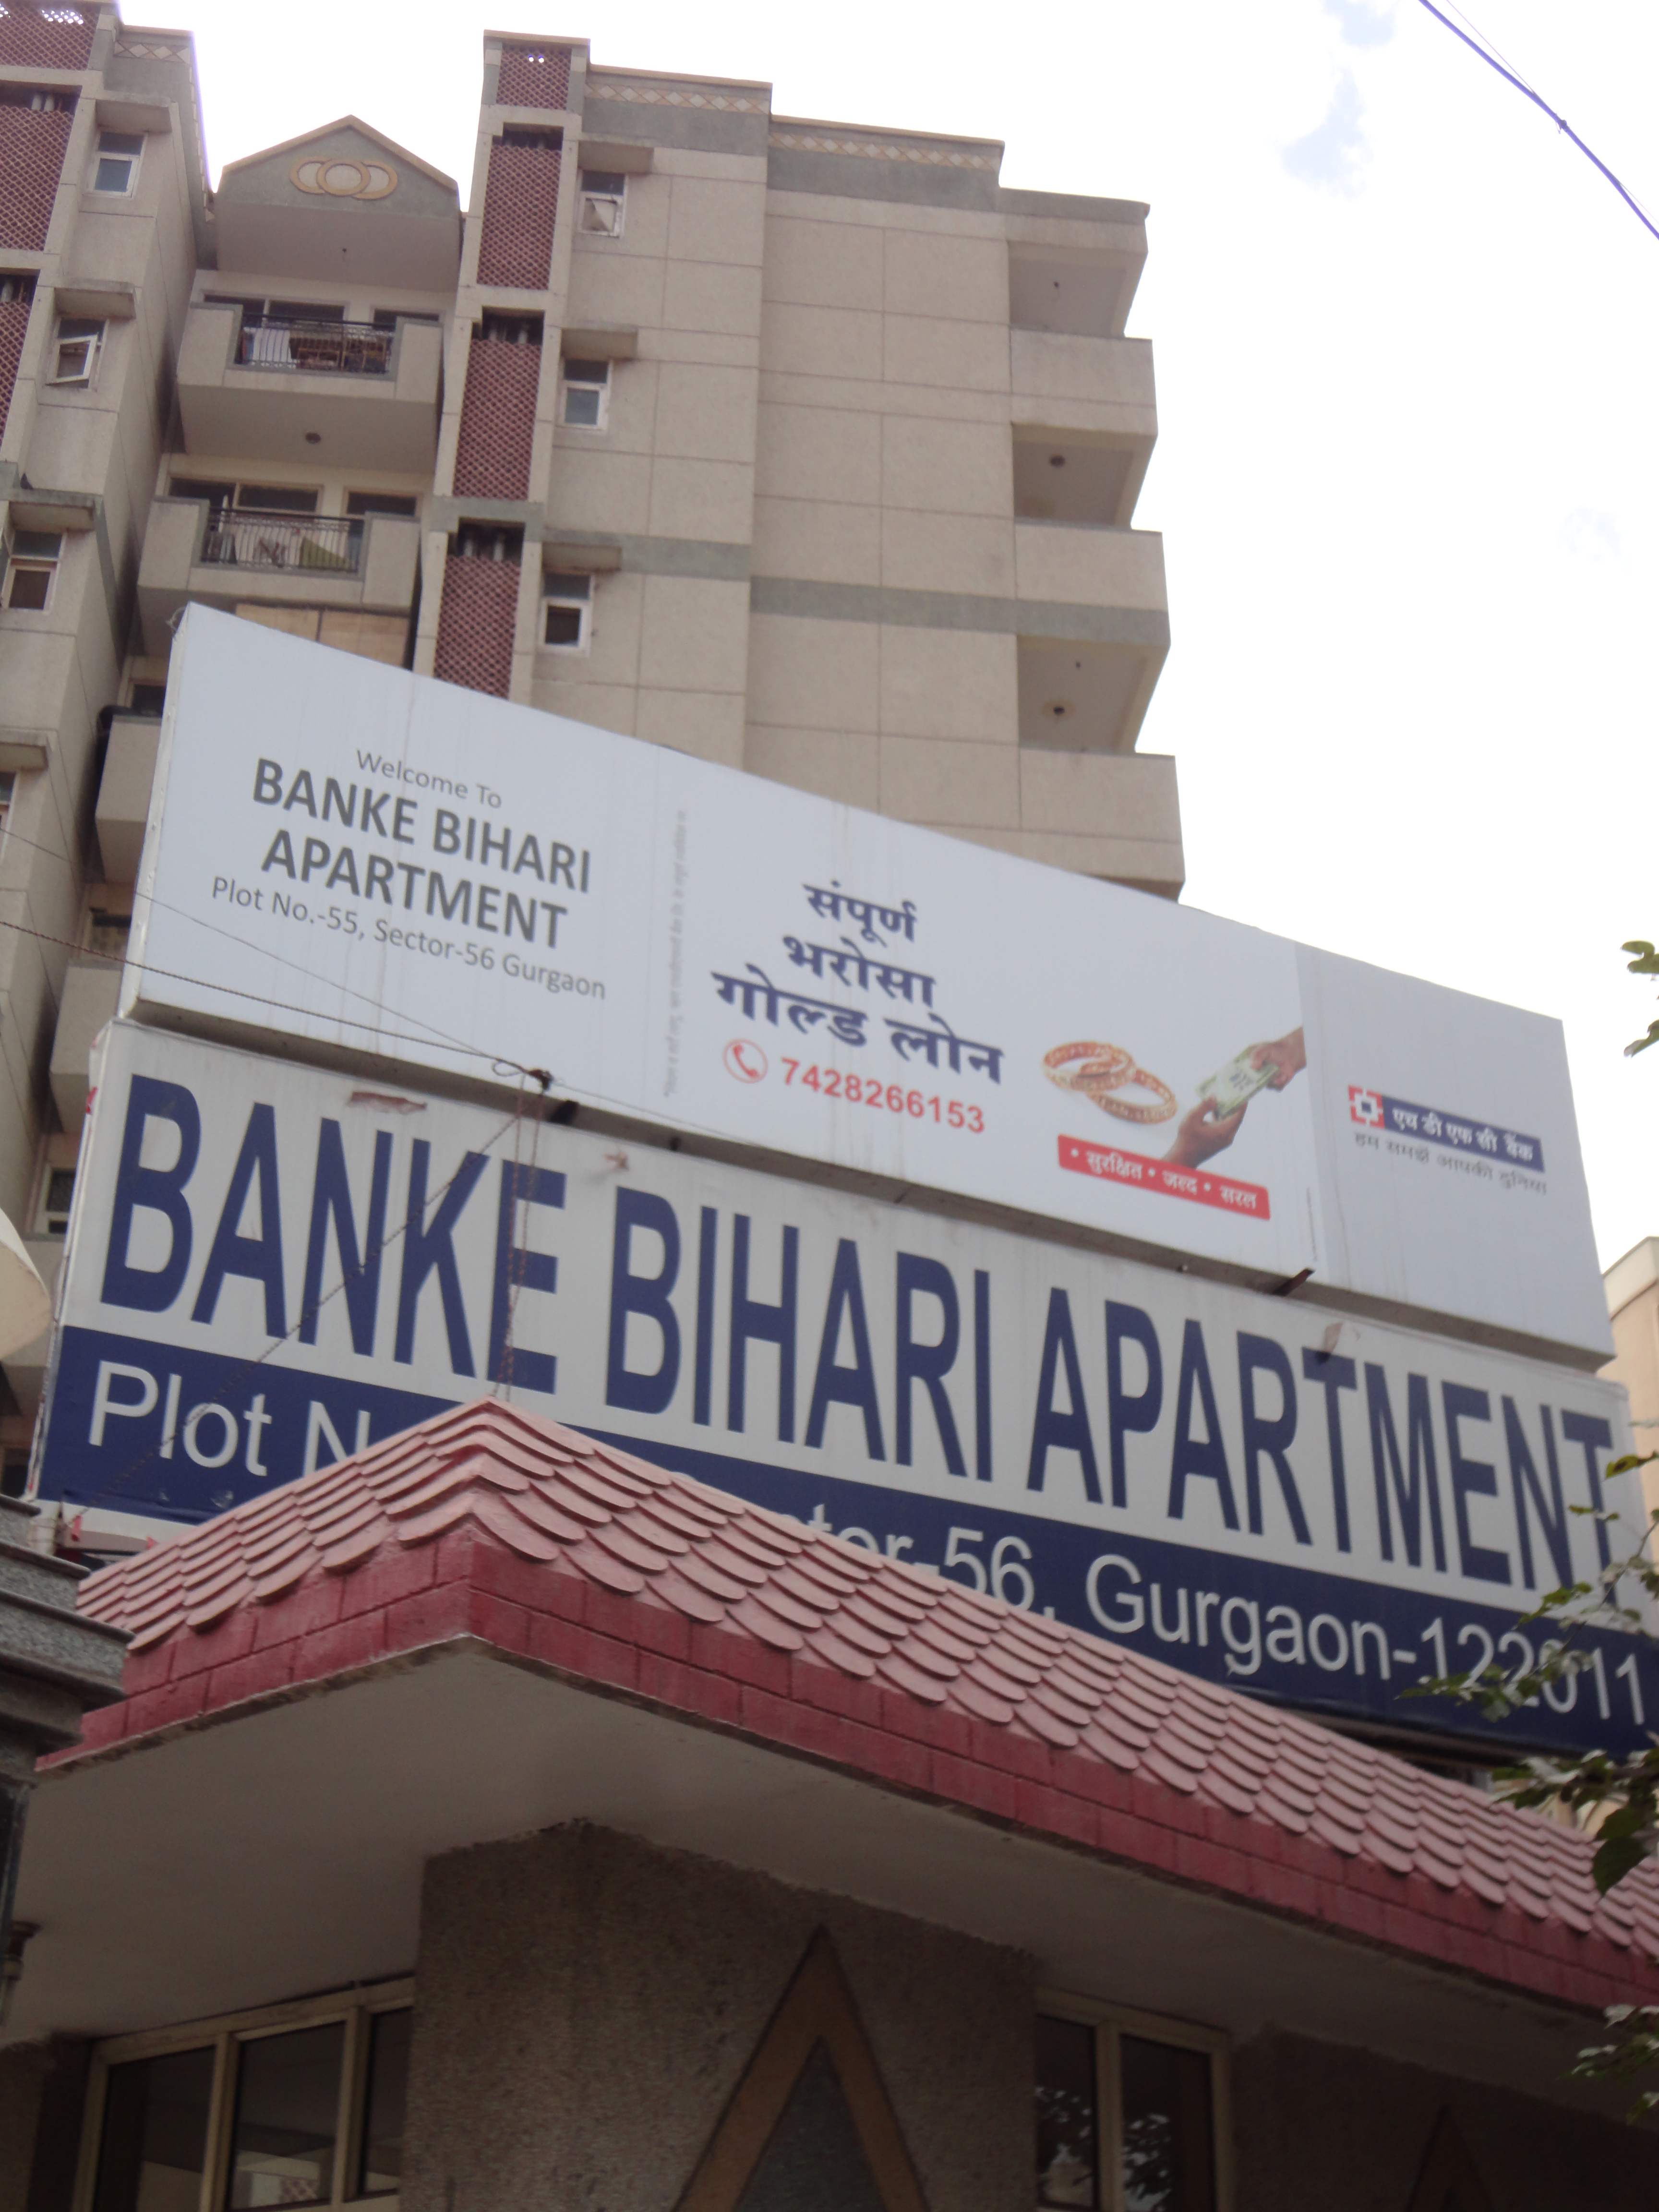 Banke Bihari Apartments CGHS Brochure Pdf Image